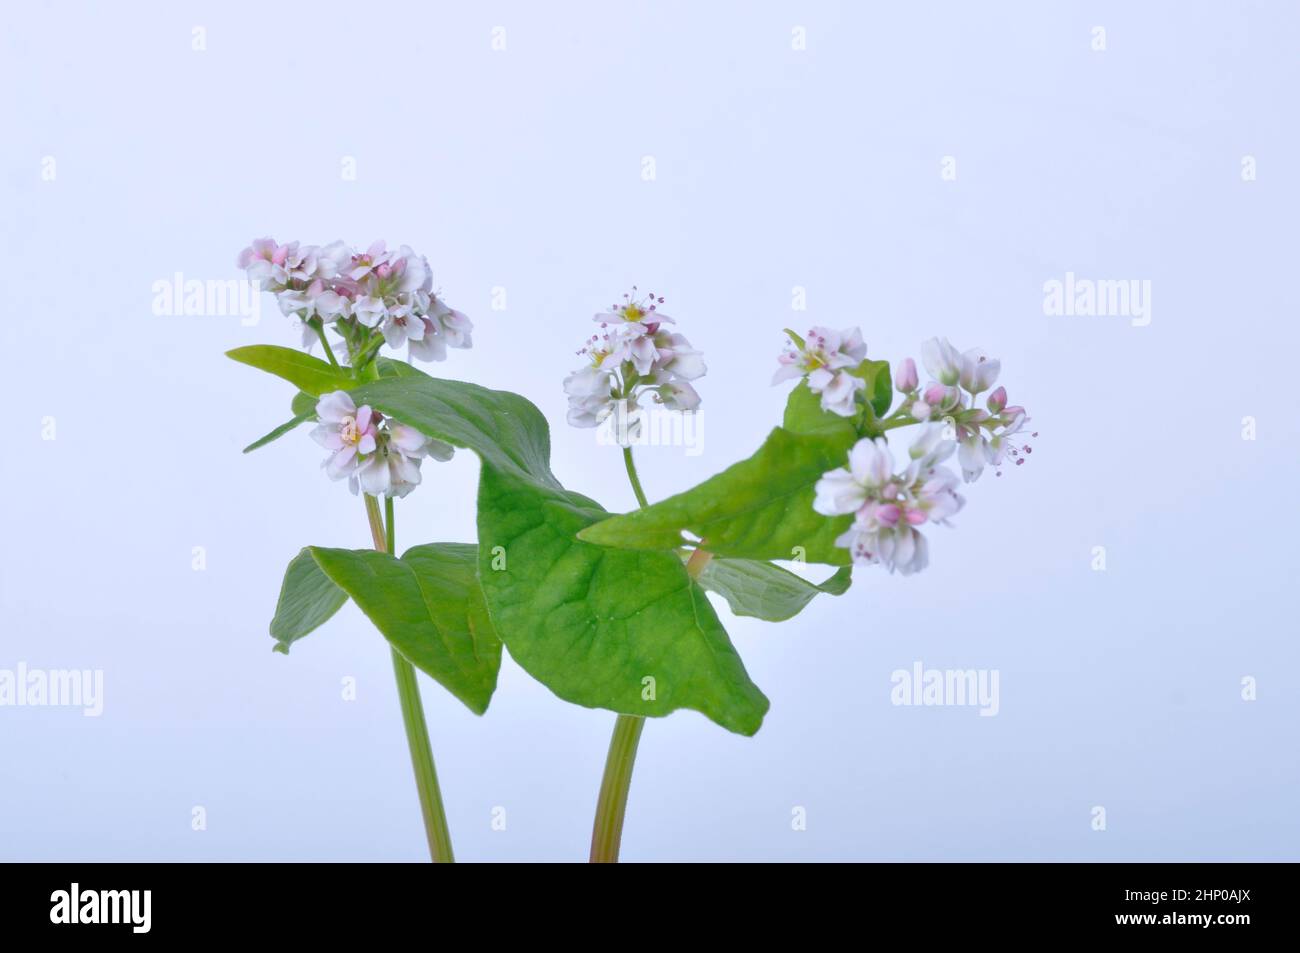 flores de trigo sarraceno sobre fondo blanco Foto de stock